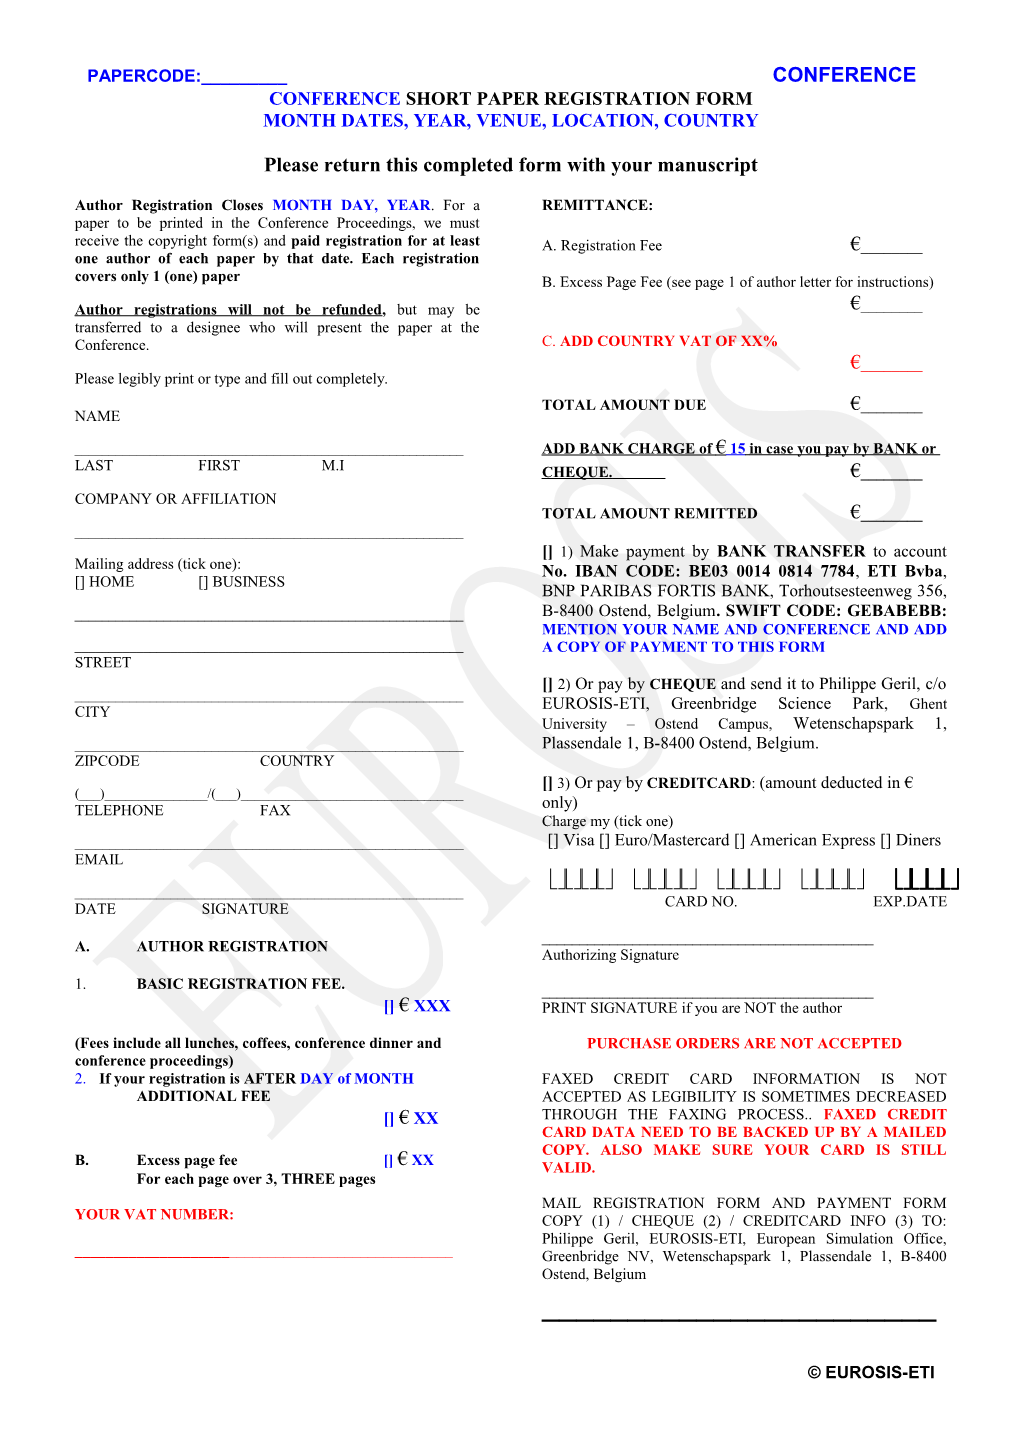 Author Short Paper Registration Form